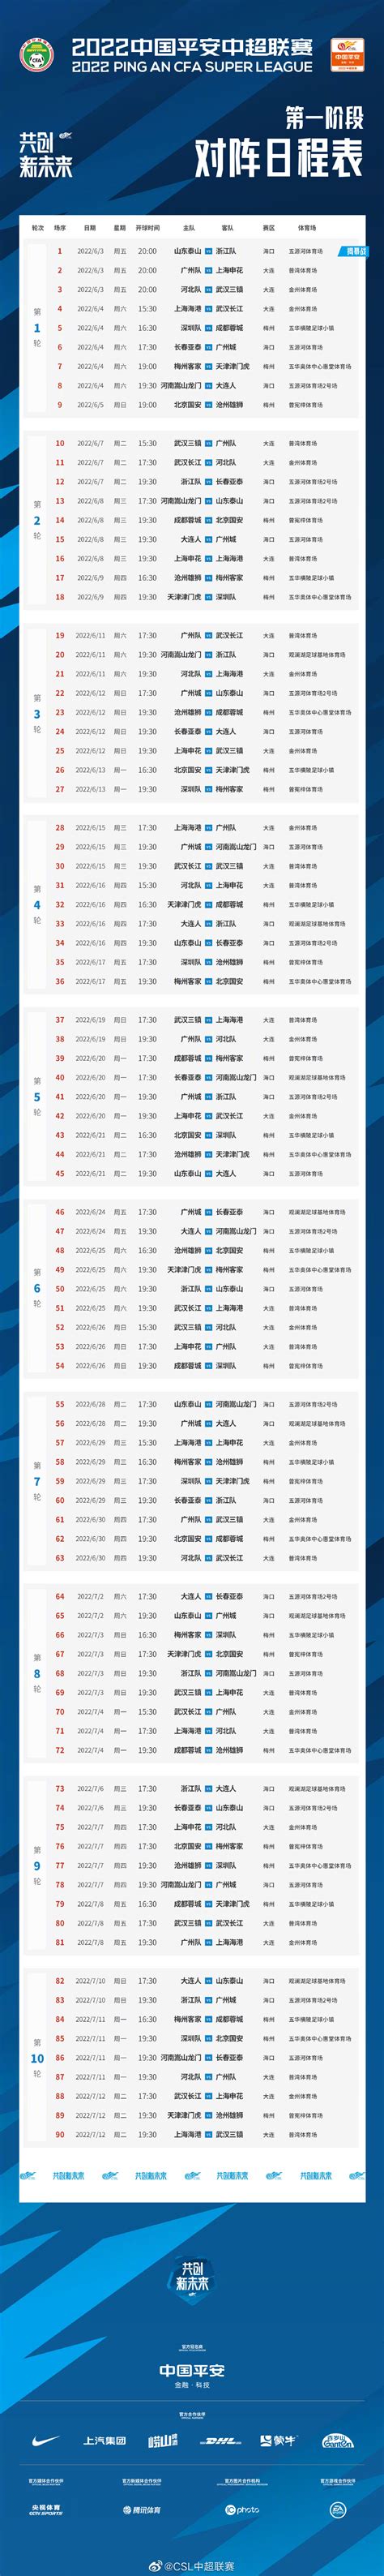 “勇超越 战为先”2022-2023中国排球超级联赛焕新出发|排球|新赛季|排超_新浪新闻